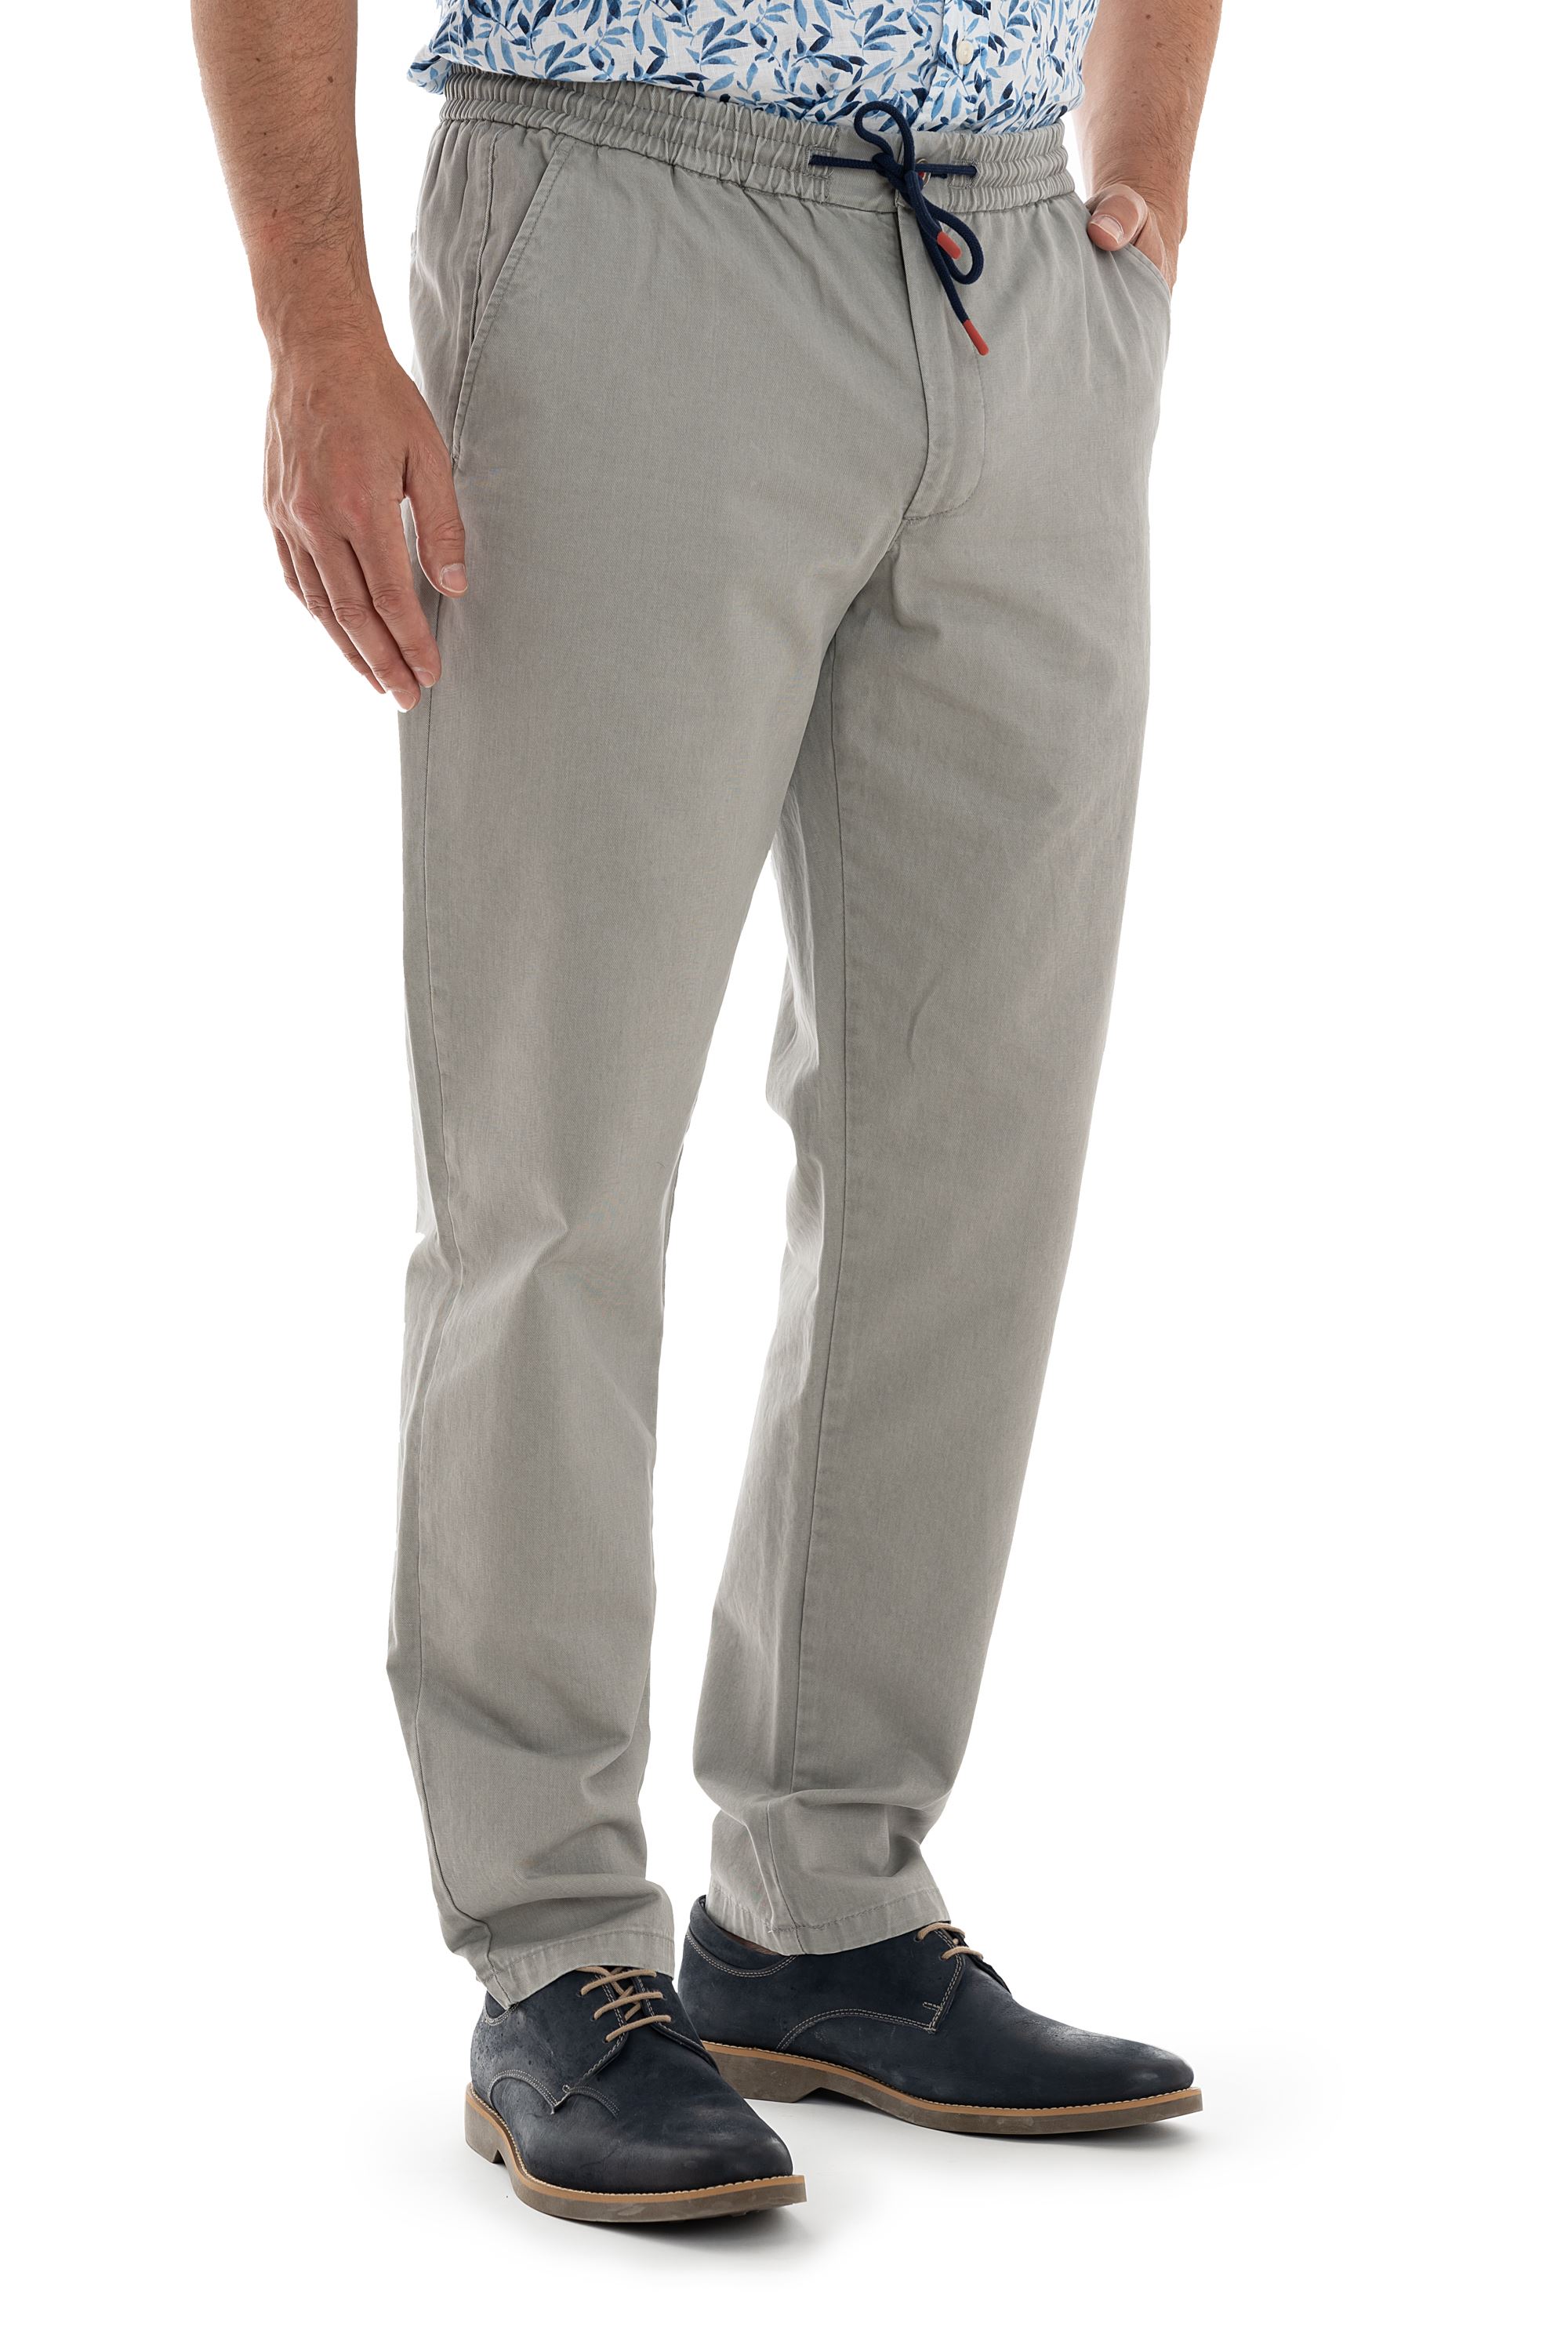 Drawstring Trousers for Men | Linen & Joggers | MR PORTER